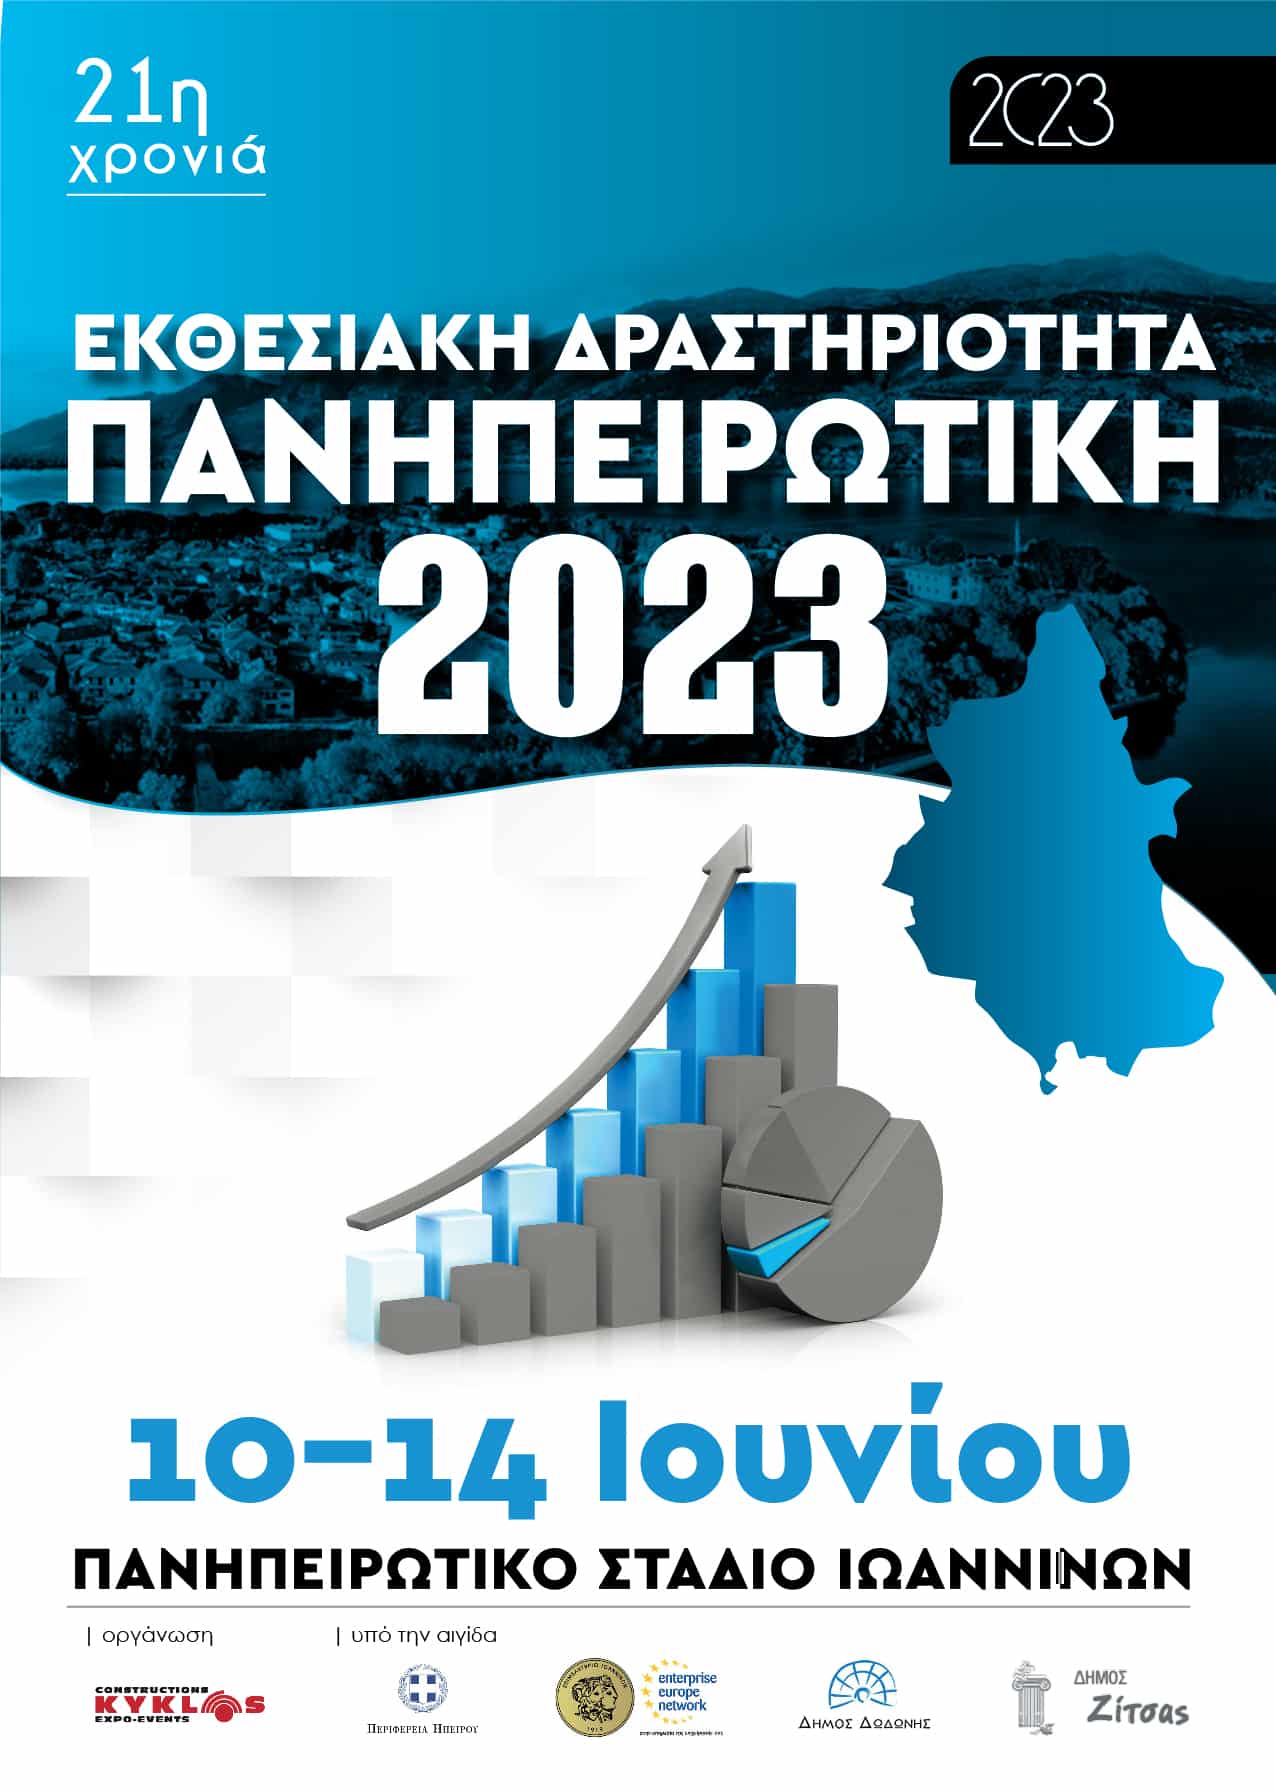 EXHIBITION ACTIVITY – 21st “PANIPIROTIKI 2023” (January 20, 2023)